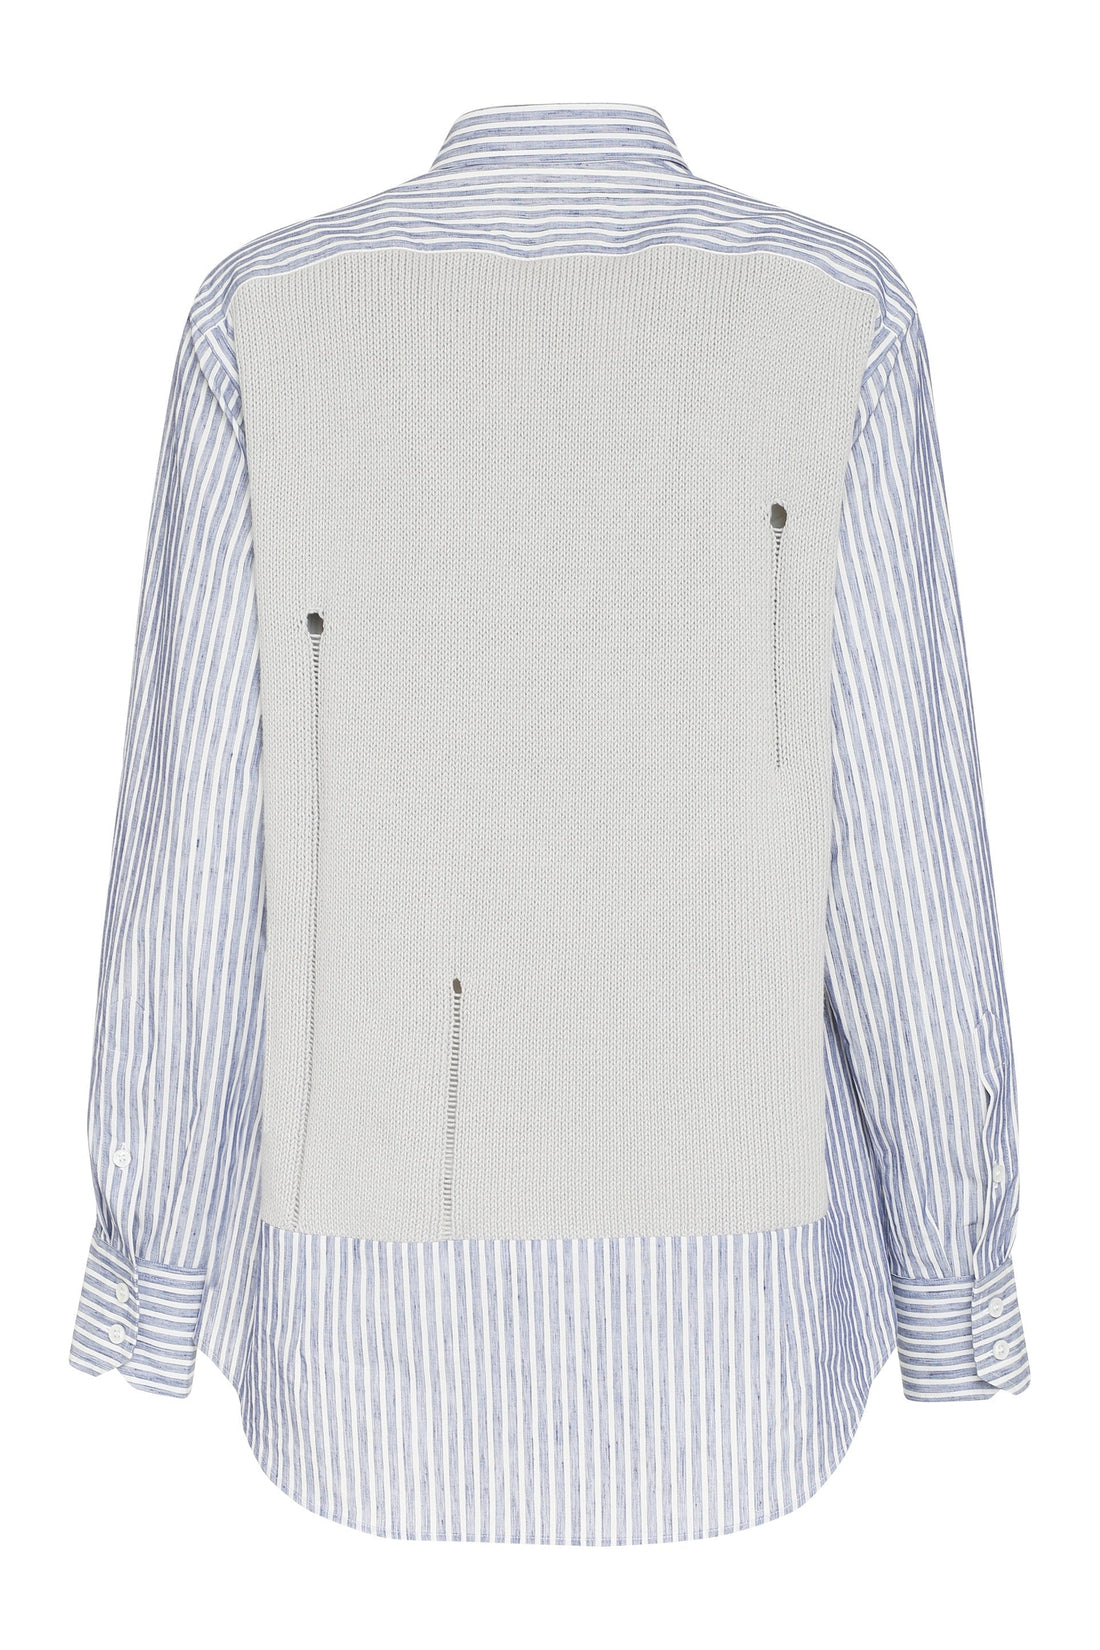 Maison Margiela-OUTLET-SALE-Striped shirt-ARCHIVIST